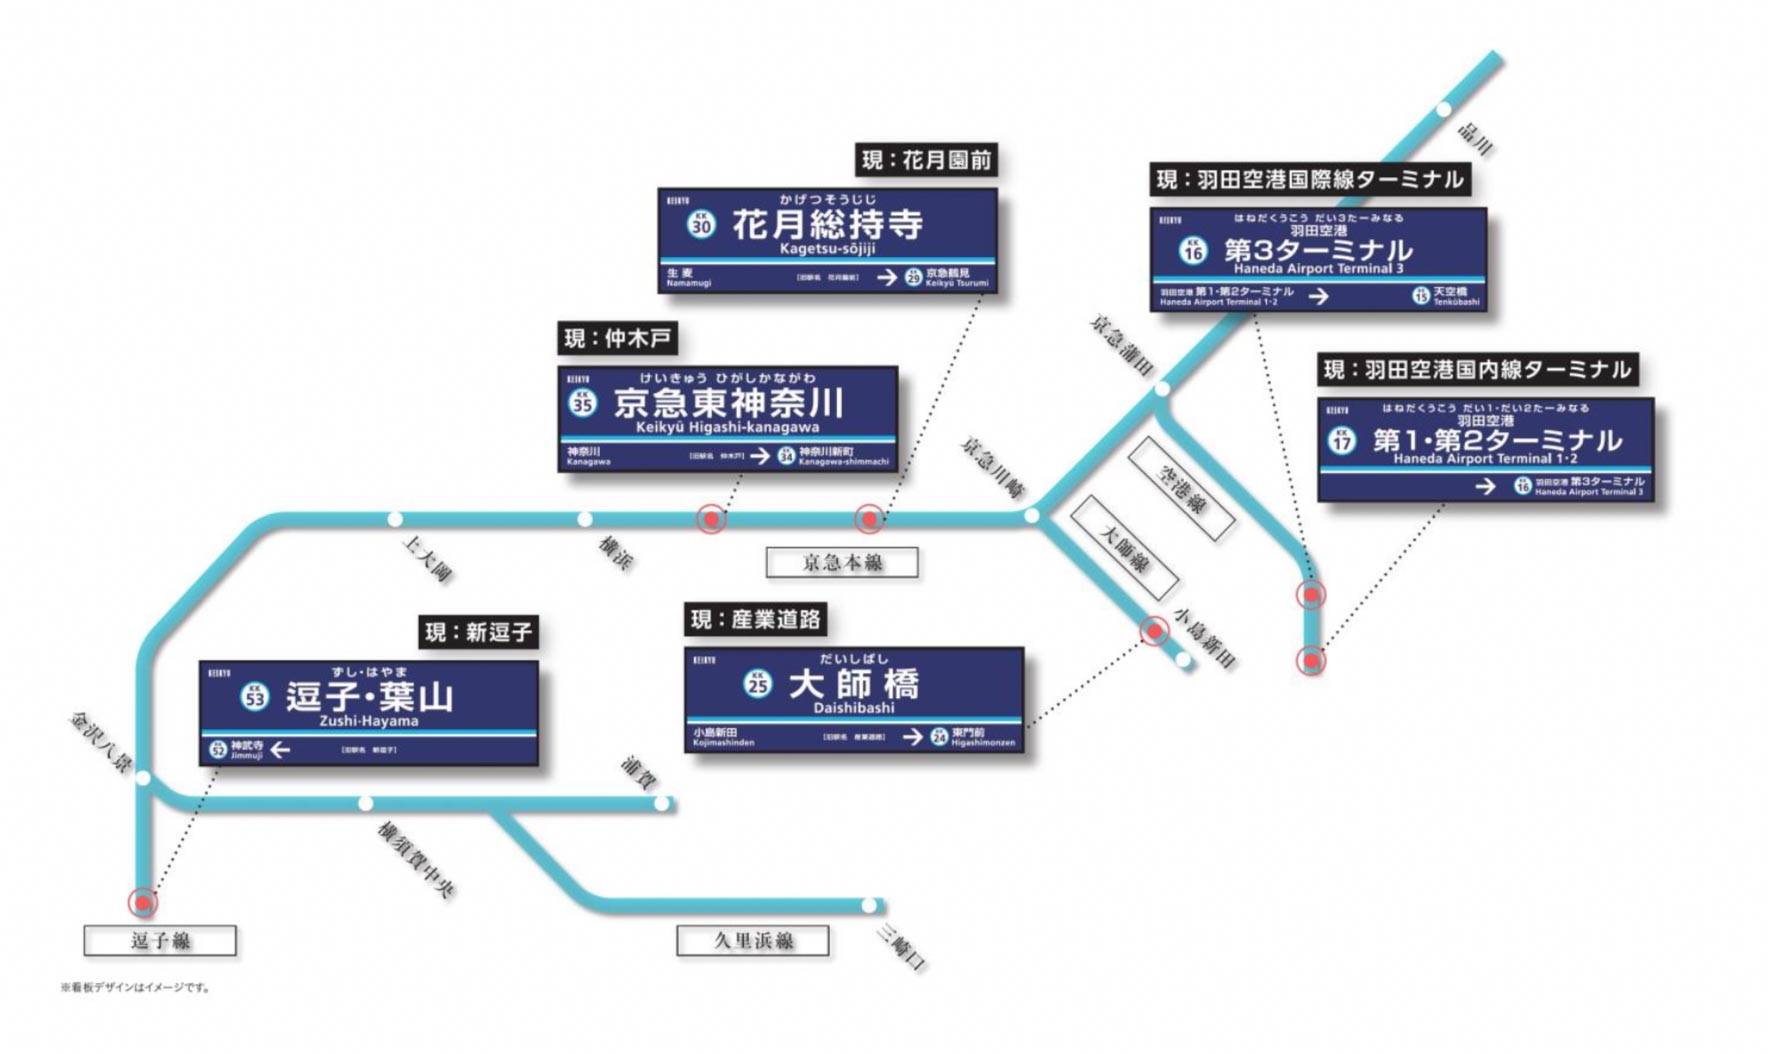 京急東神奈川は大歓迎 全然葉山じゃないヨ 年3月14日変更 京急6つの新駅名 を鉄道ファン目線で確認してみた 1 2 ページ ねとらぼ